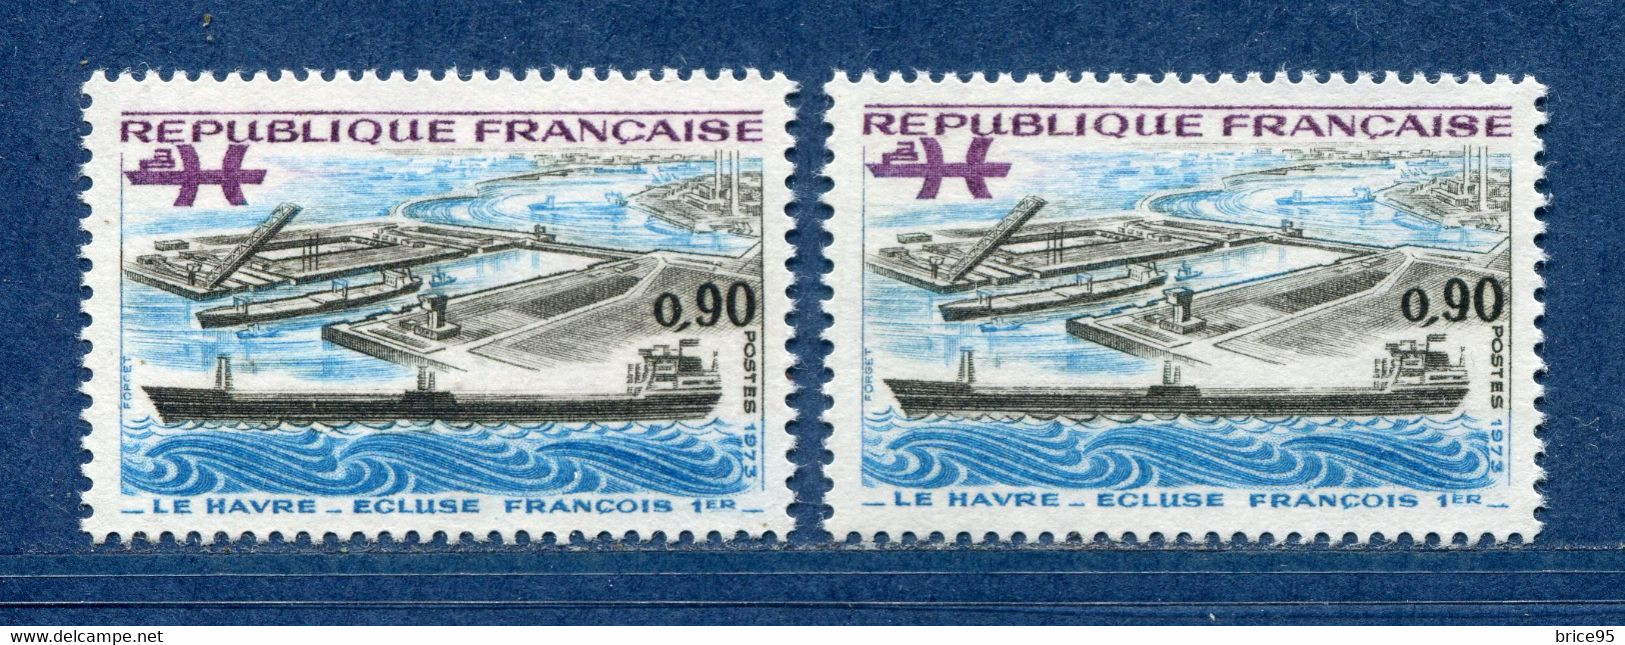 ⭐ France - Variété - YT N° 1772 - Couleurs - Pétouille - Neuf Sans Charnière - 1973 ⭐ - Ongebruikt